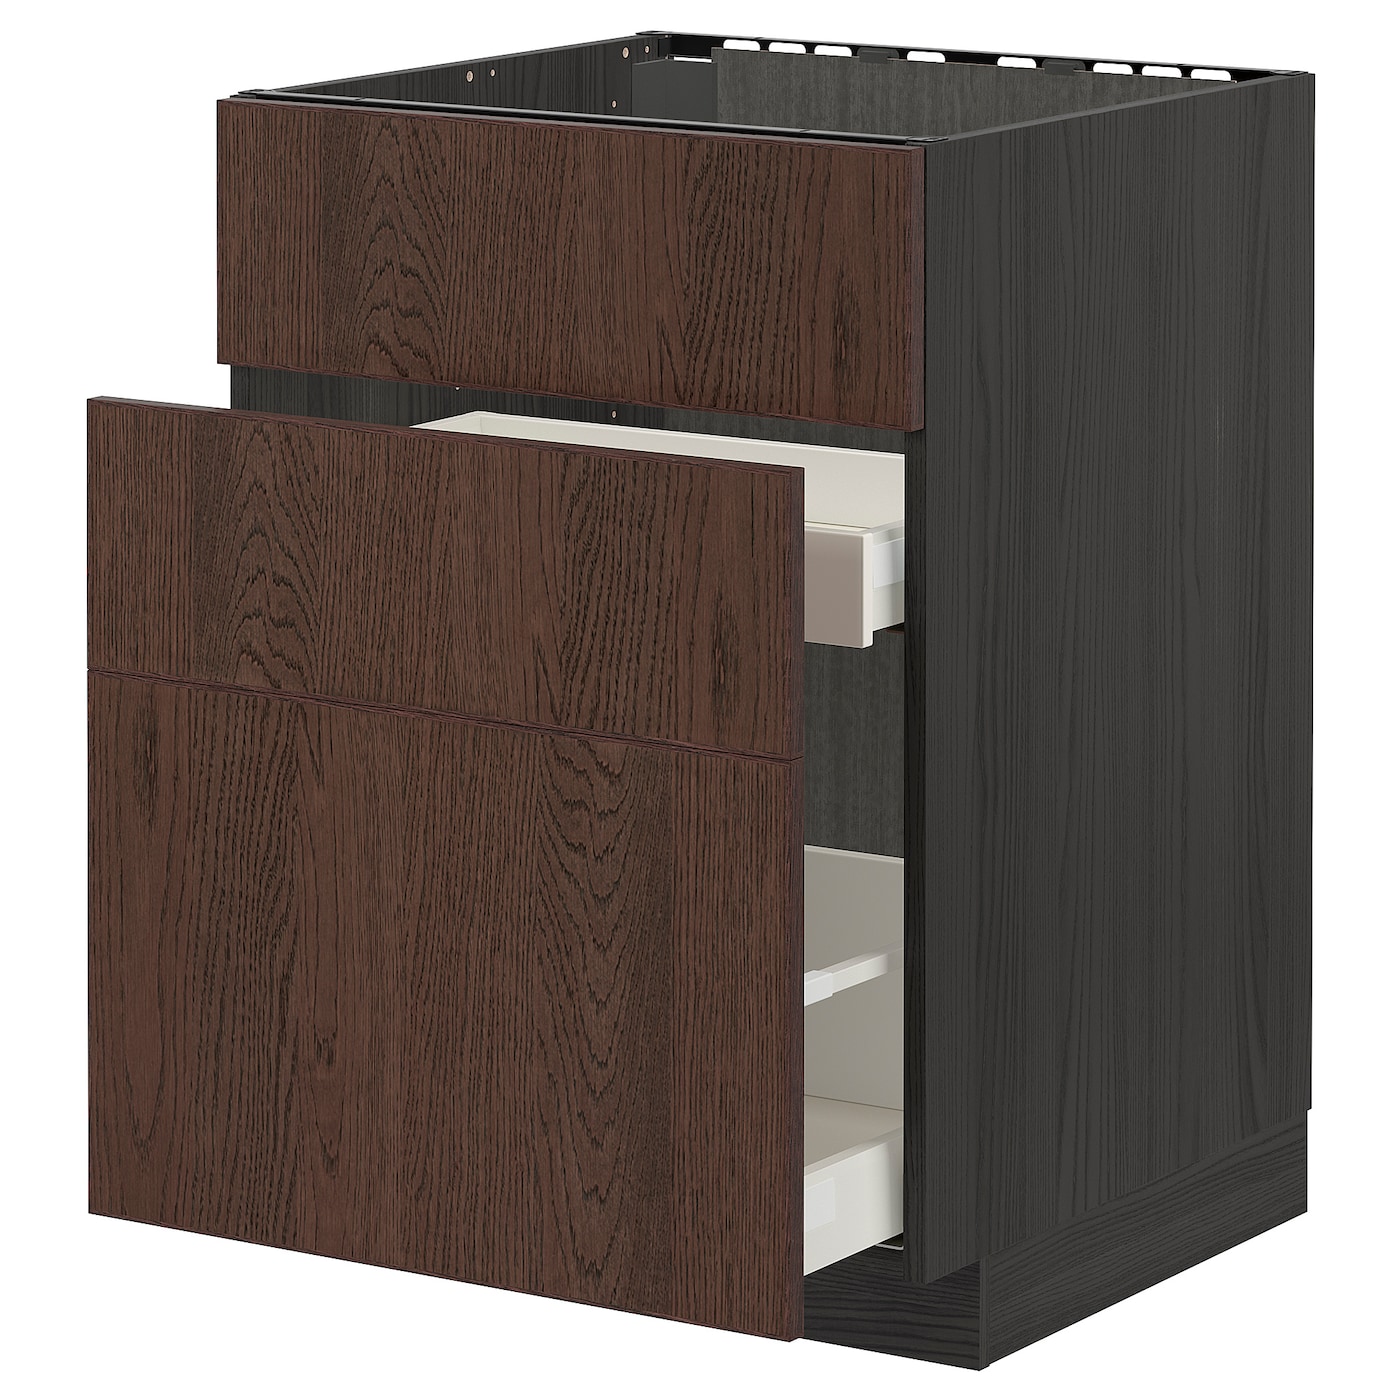 Напольный кухонный шкаф  - IKEA METOD MAXIMERA, 88x62x60см, черный/коричневый, МЕТОД МАКСИМЕРА ИКЕА